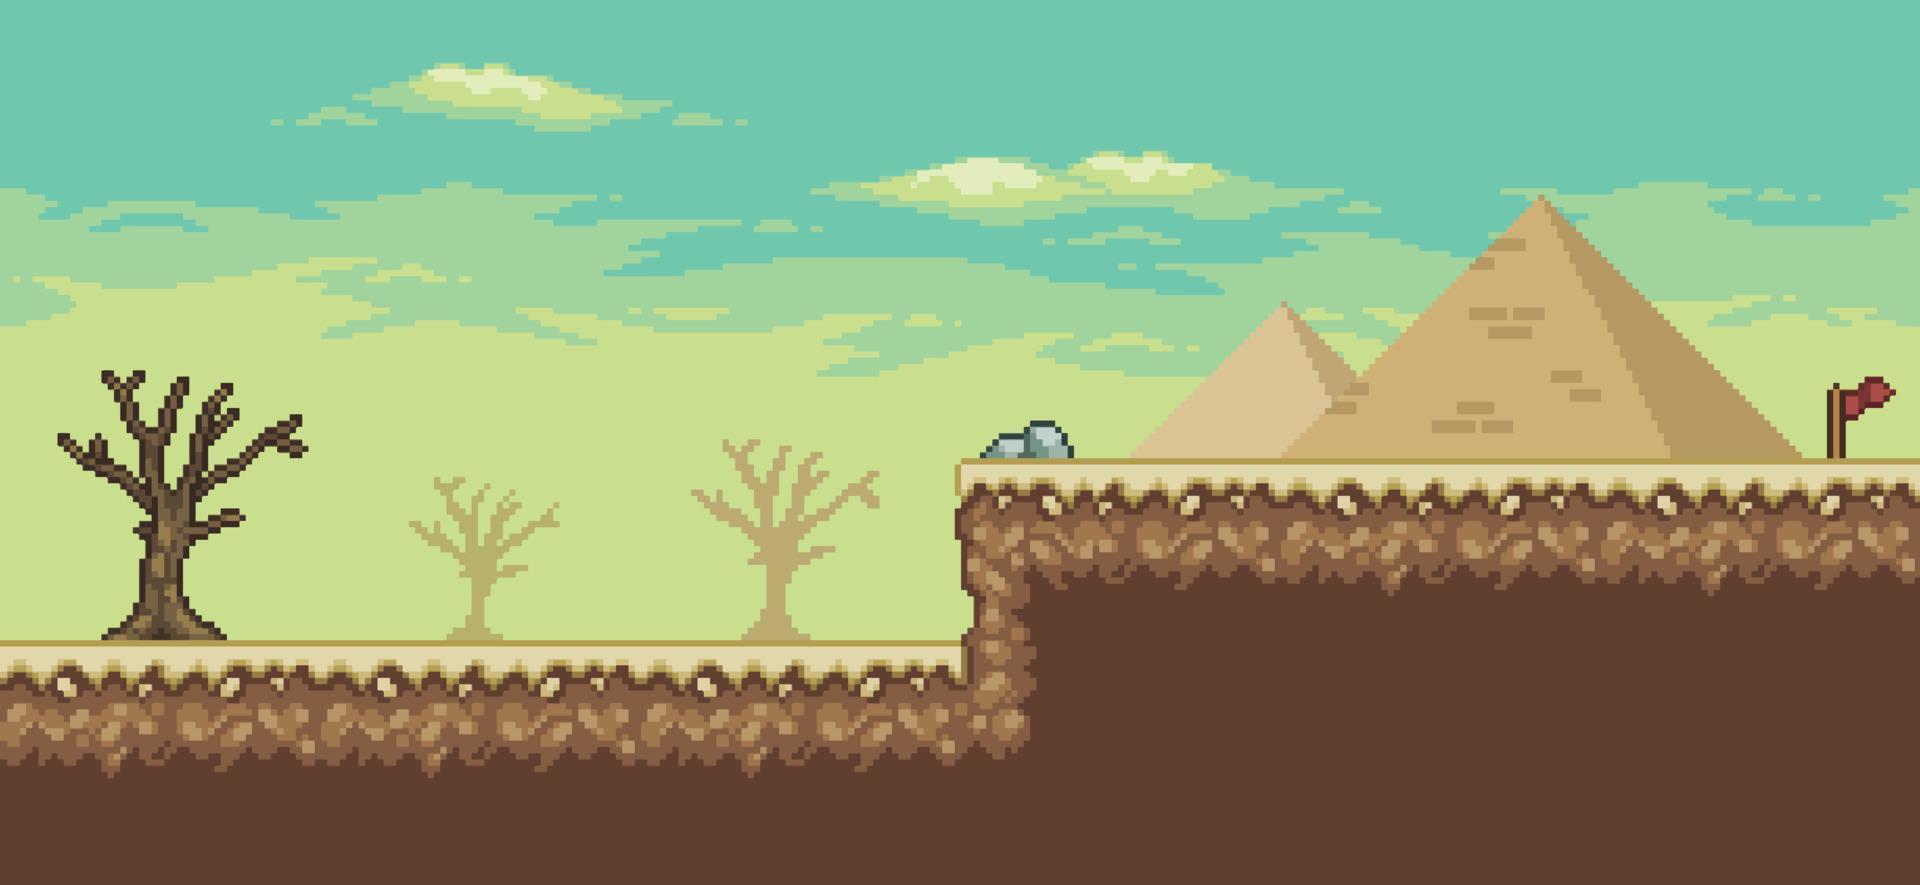 escena del juego del desierto de pixel art con palmera, pirámides, cactus, fondo de árbol de 8 bits vector